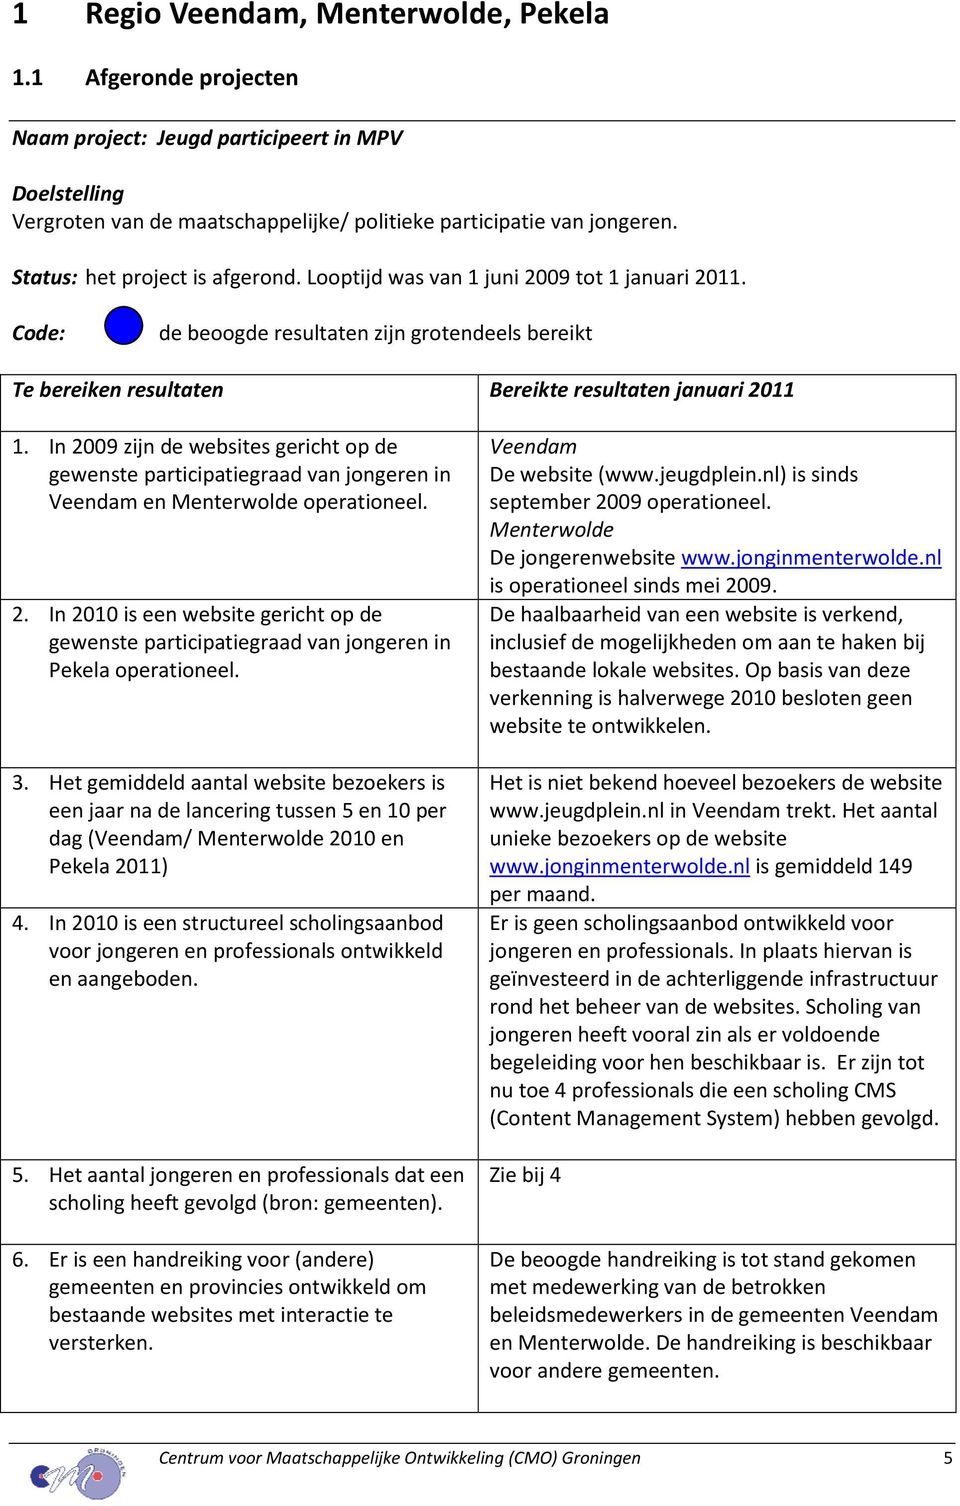 In 2009 zijn de websites gericht op de gewenste participatiegraad van jongeren in Veendam en Menterwolde operationeel. 2. In 2010 is een website gericht op de gewenste participatiegraad van jongeren in Pekela operationeel.